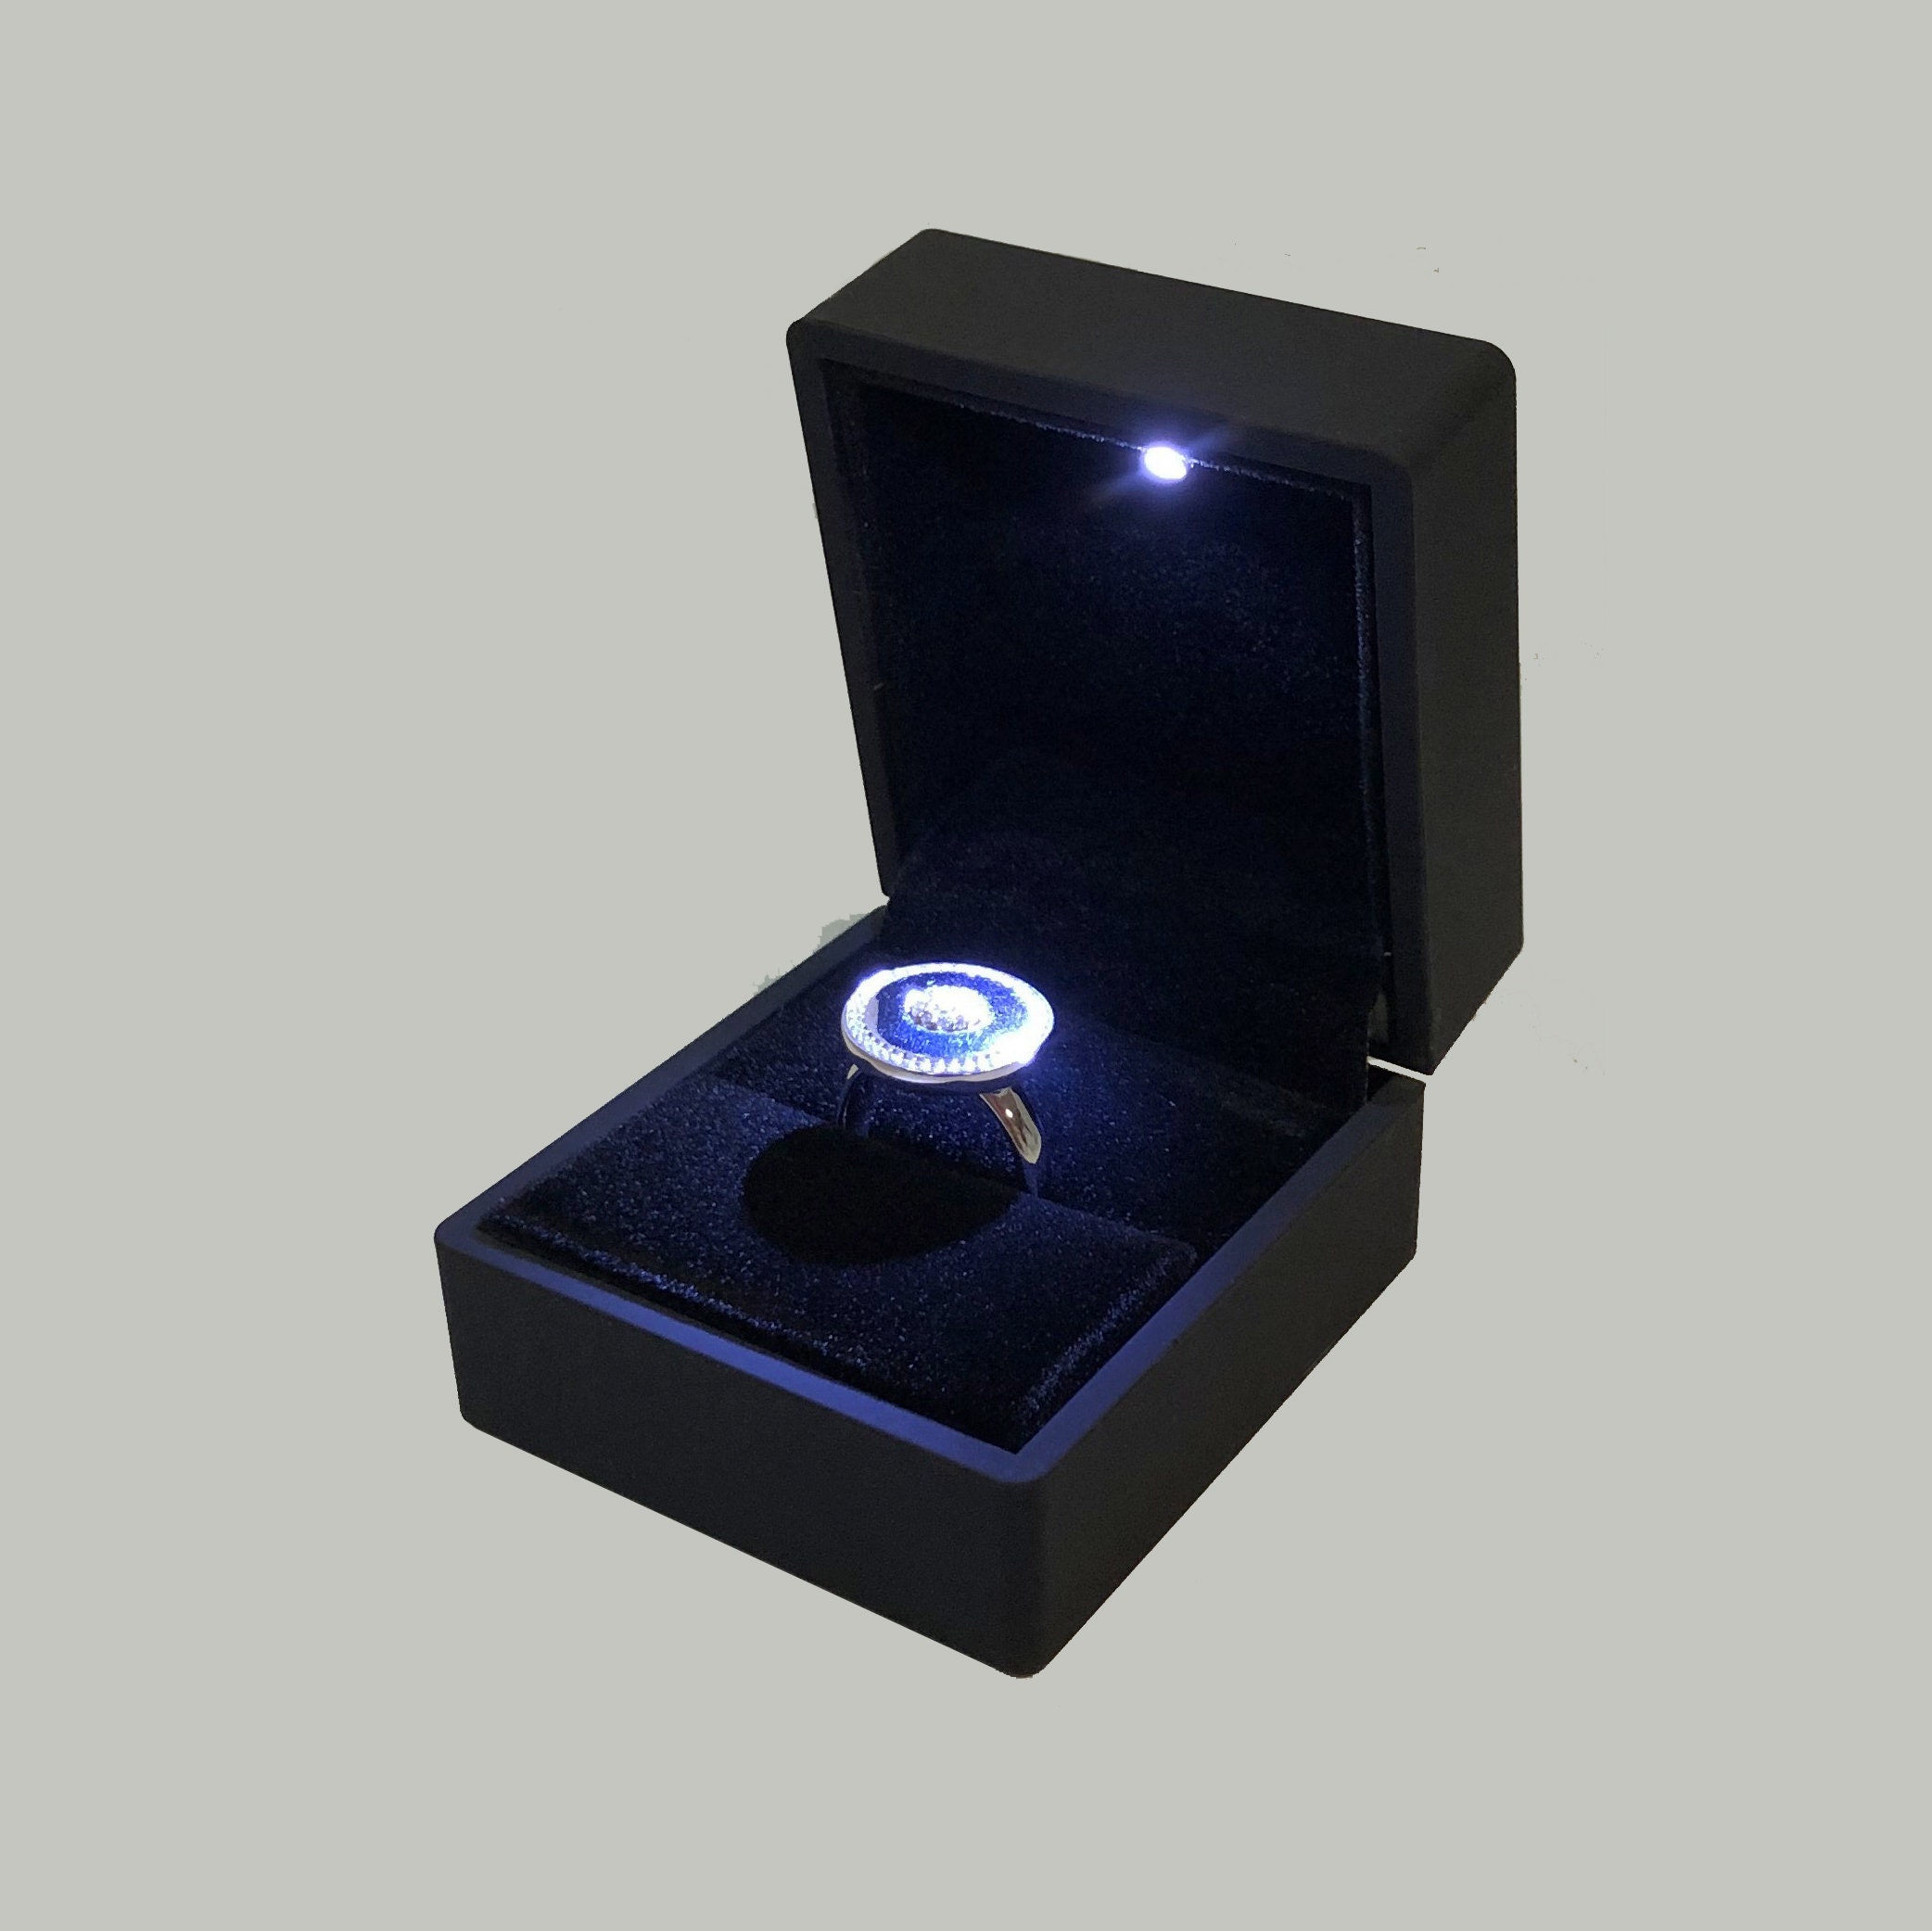 LED Light Ring Box Jewelry box Engagement Ring Box illuminated | Etsy